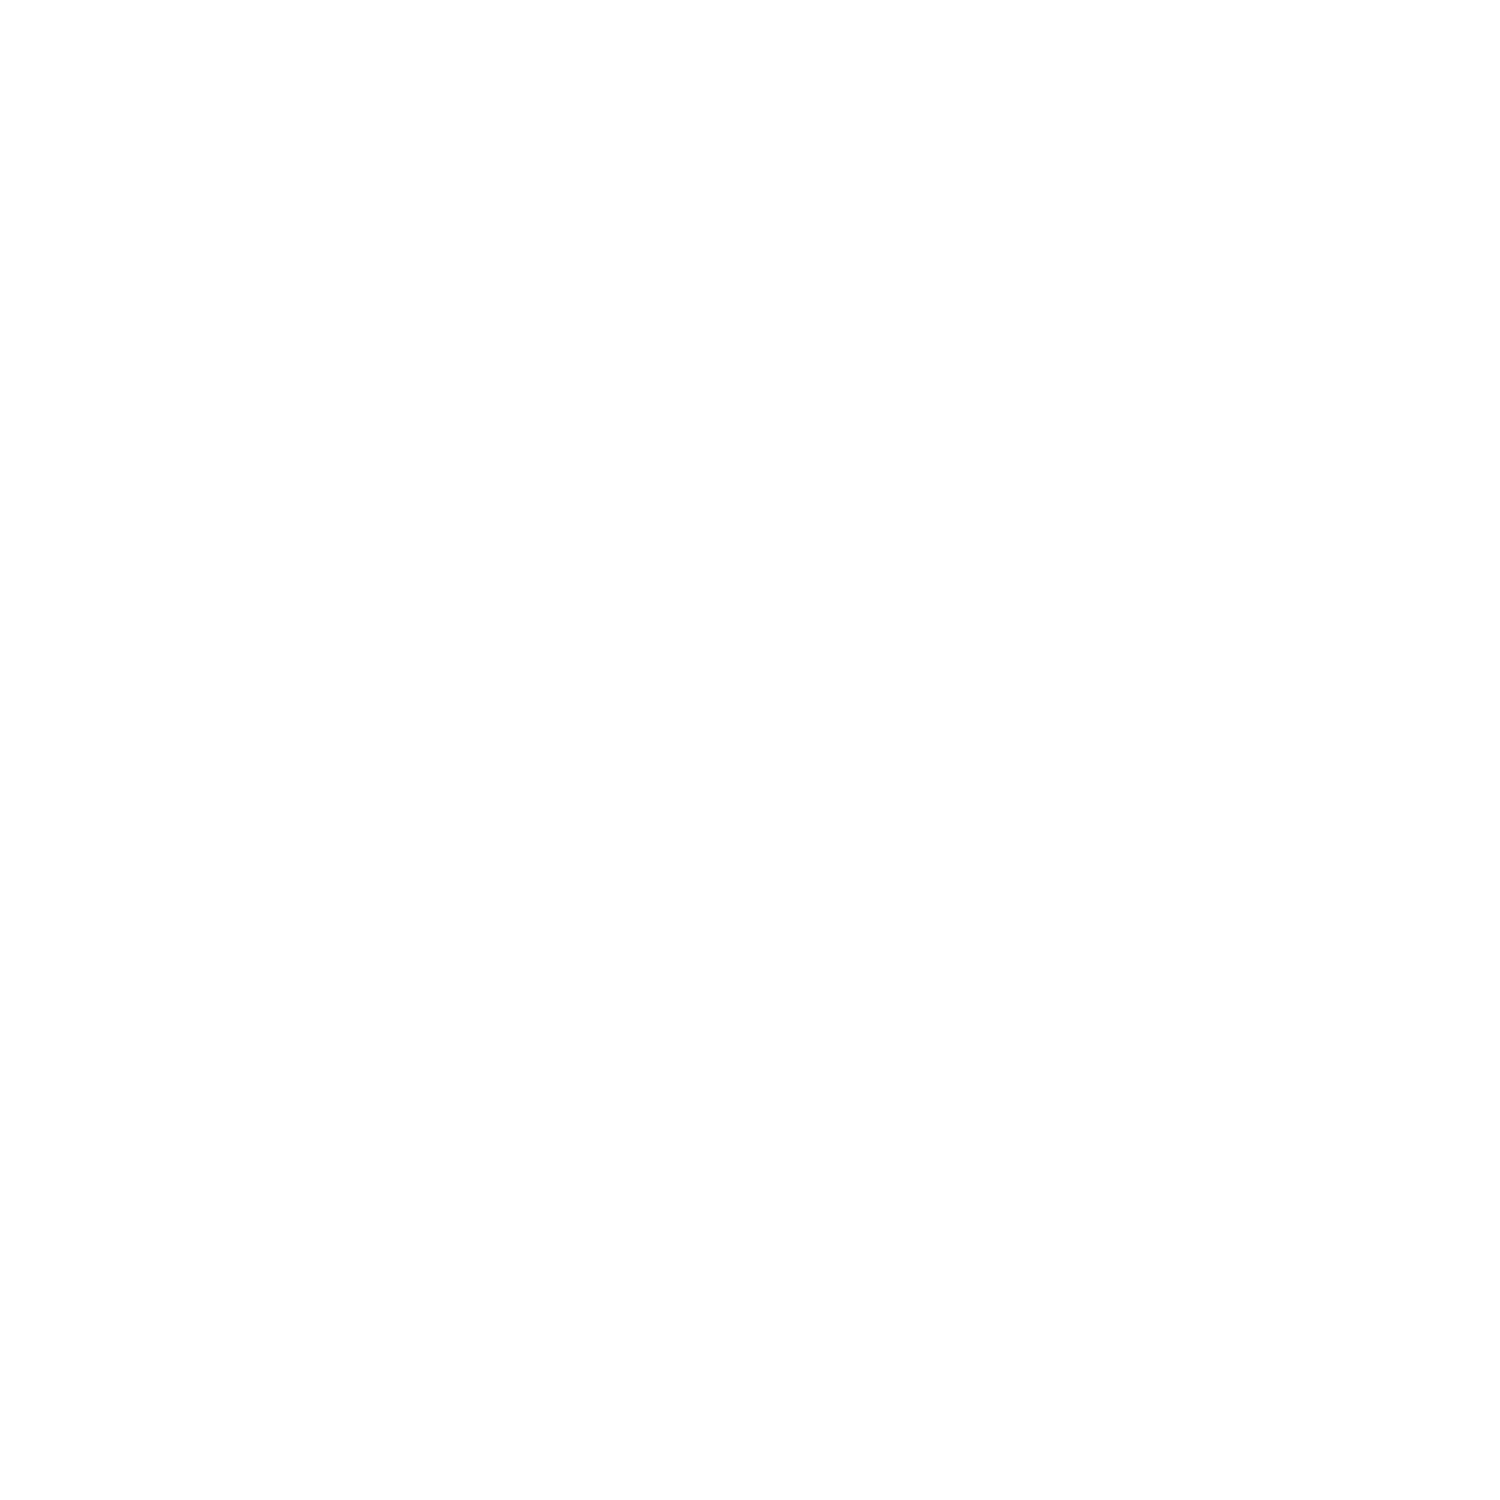 SMTTE-modellens fem elementer